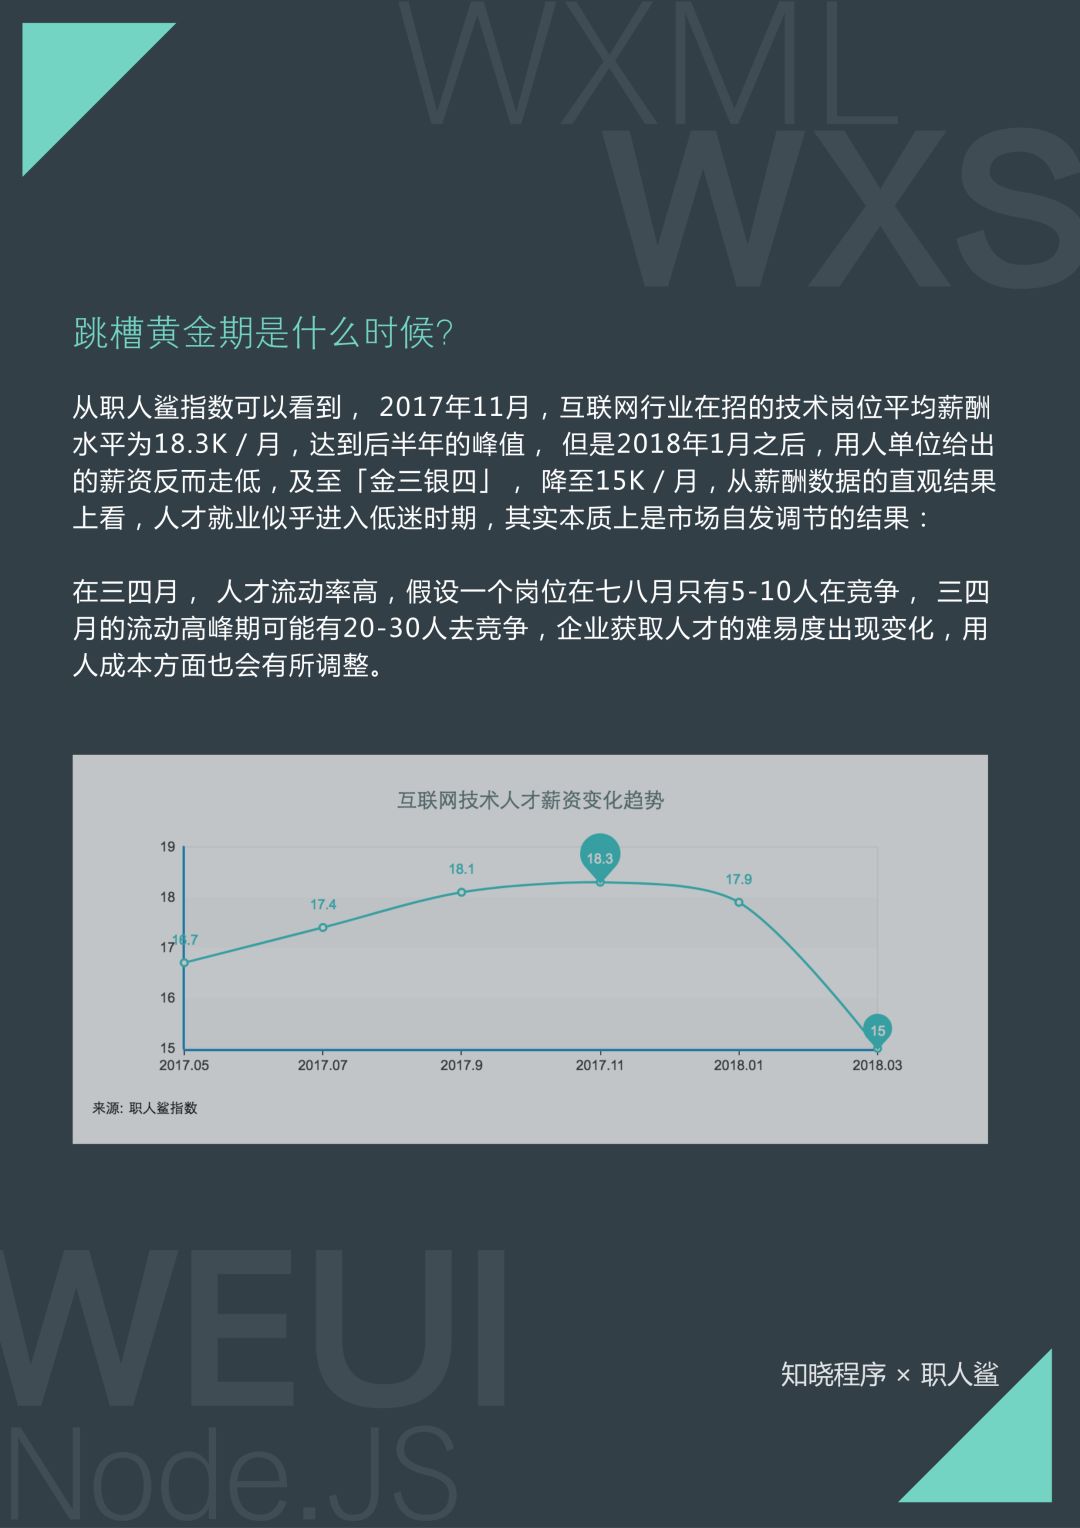 平均月薪 17.2 K，深圳、杭州待遇最高，首份小程序技术人才就业指南出炉